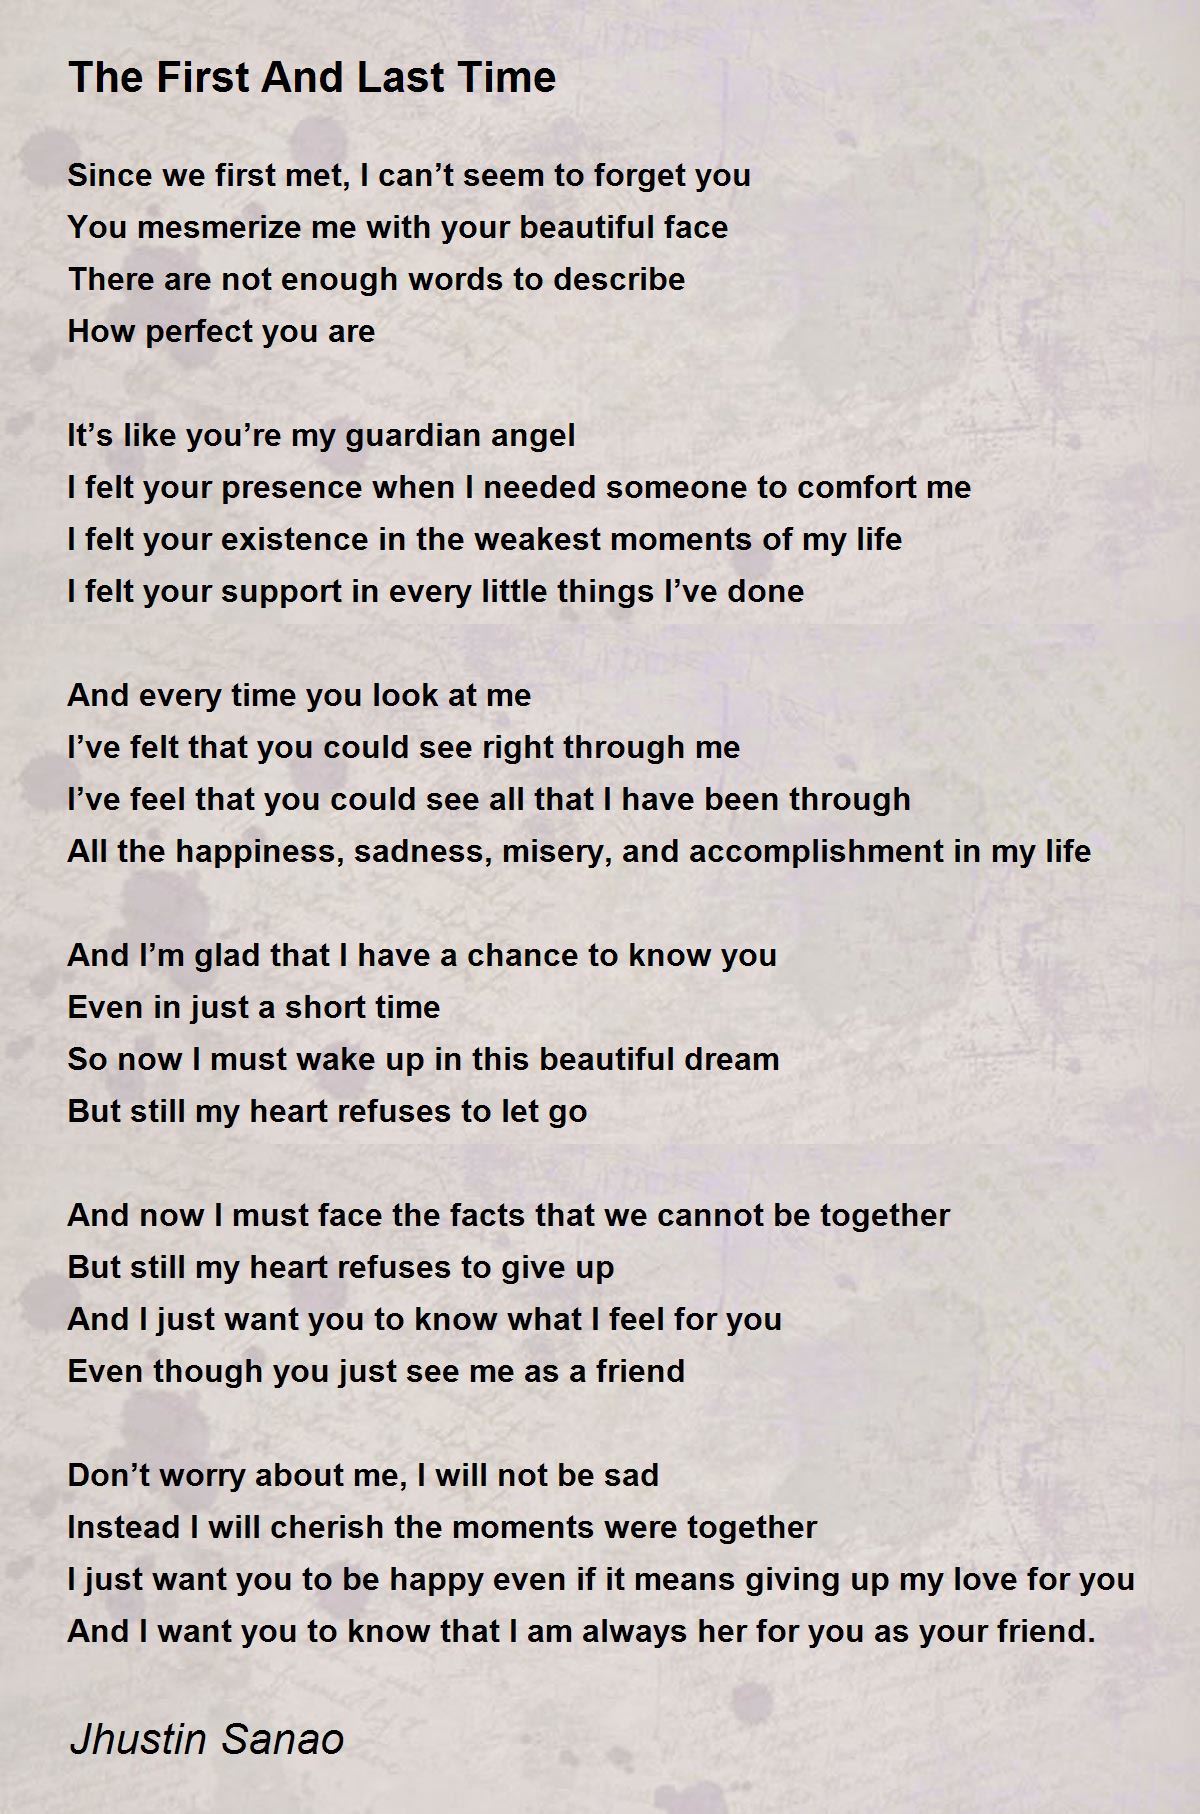 The First And Last Time The First And Last Time Poem By Jhustin Sanao